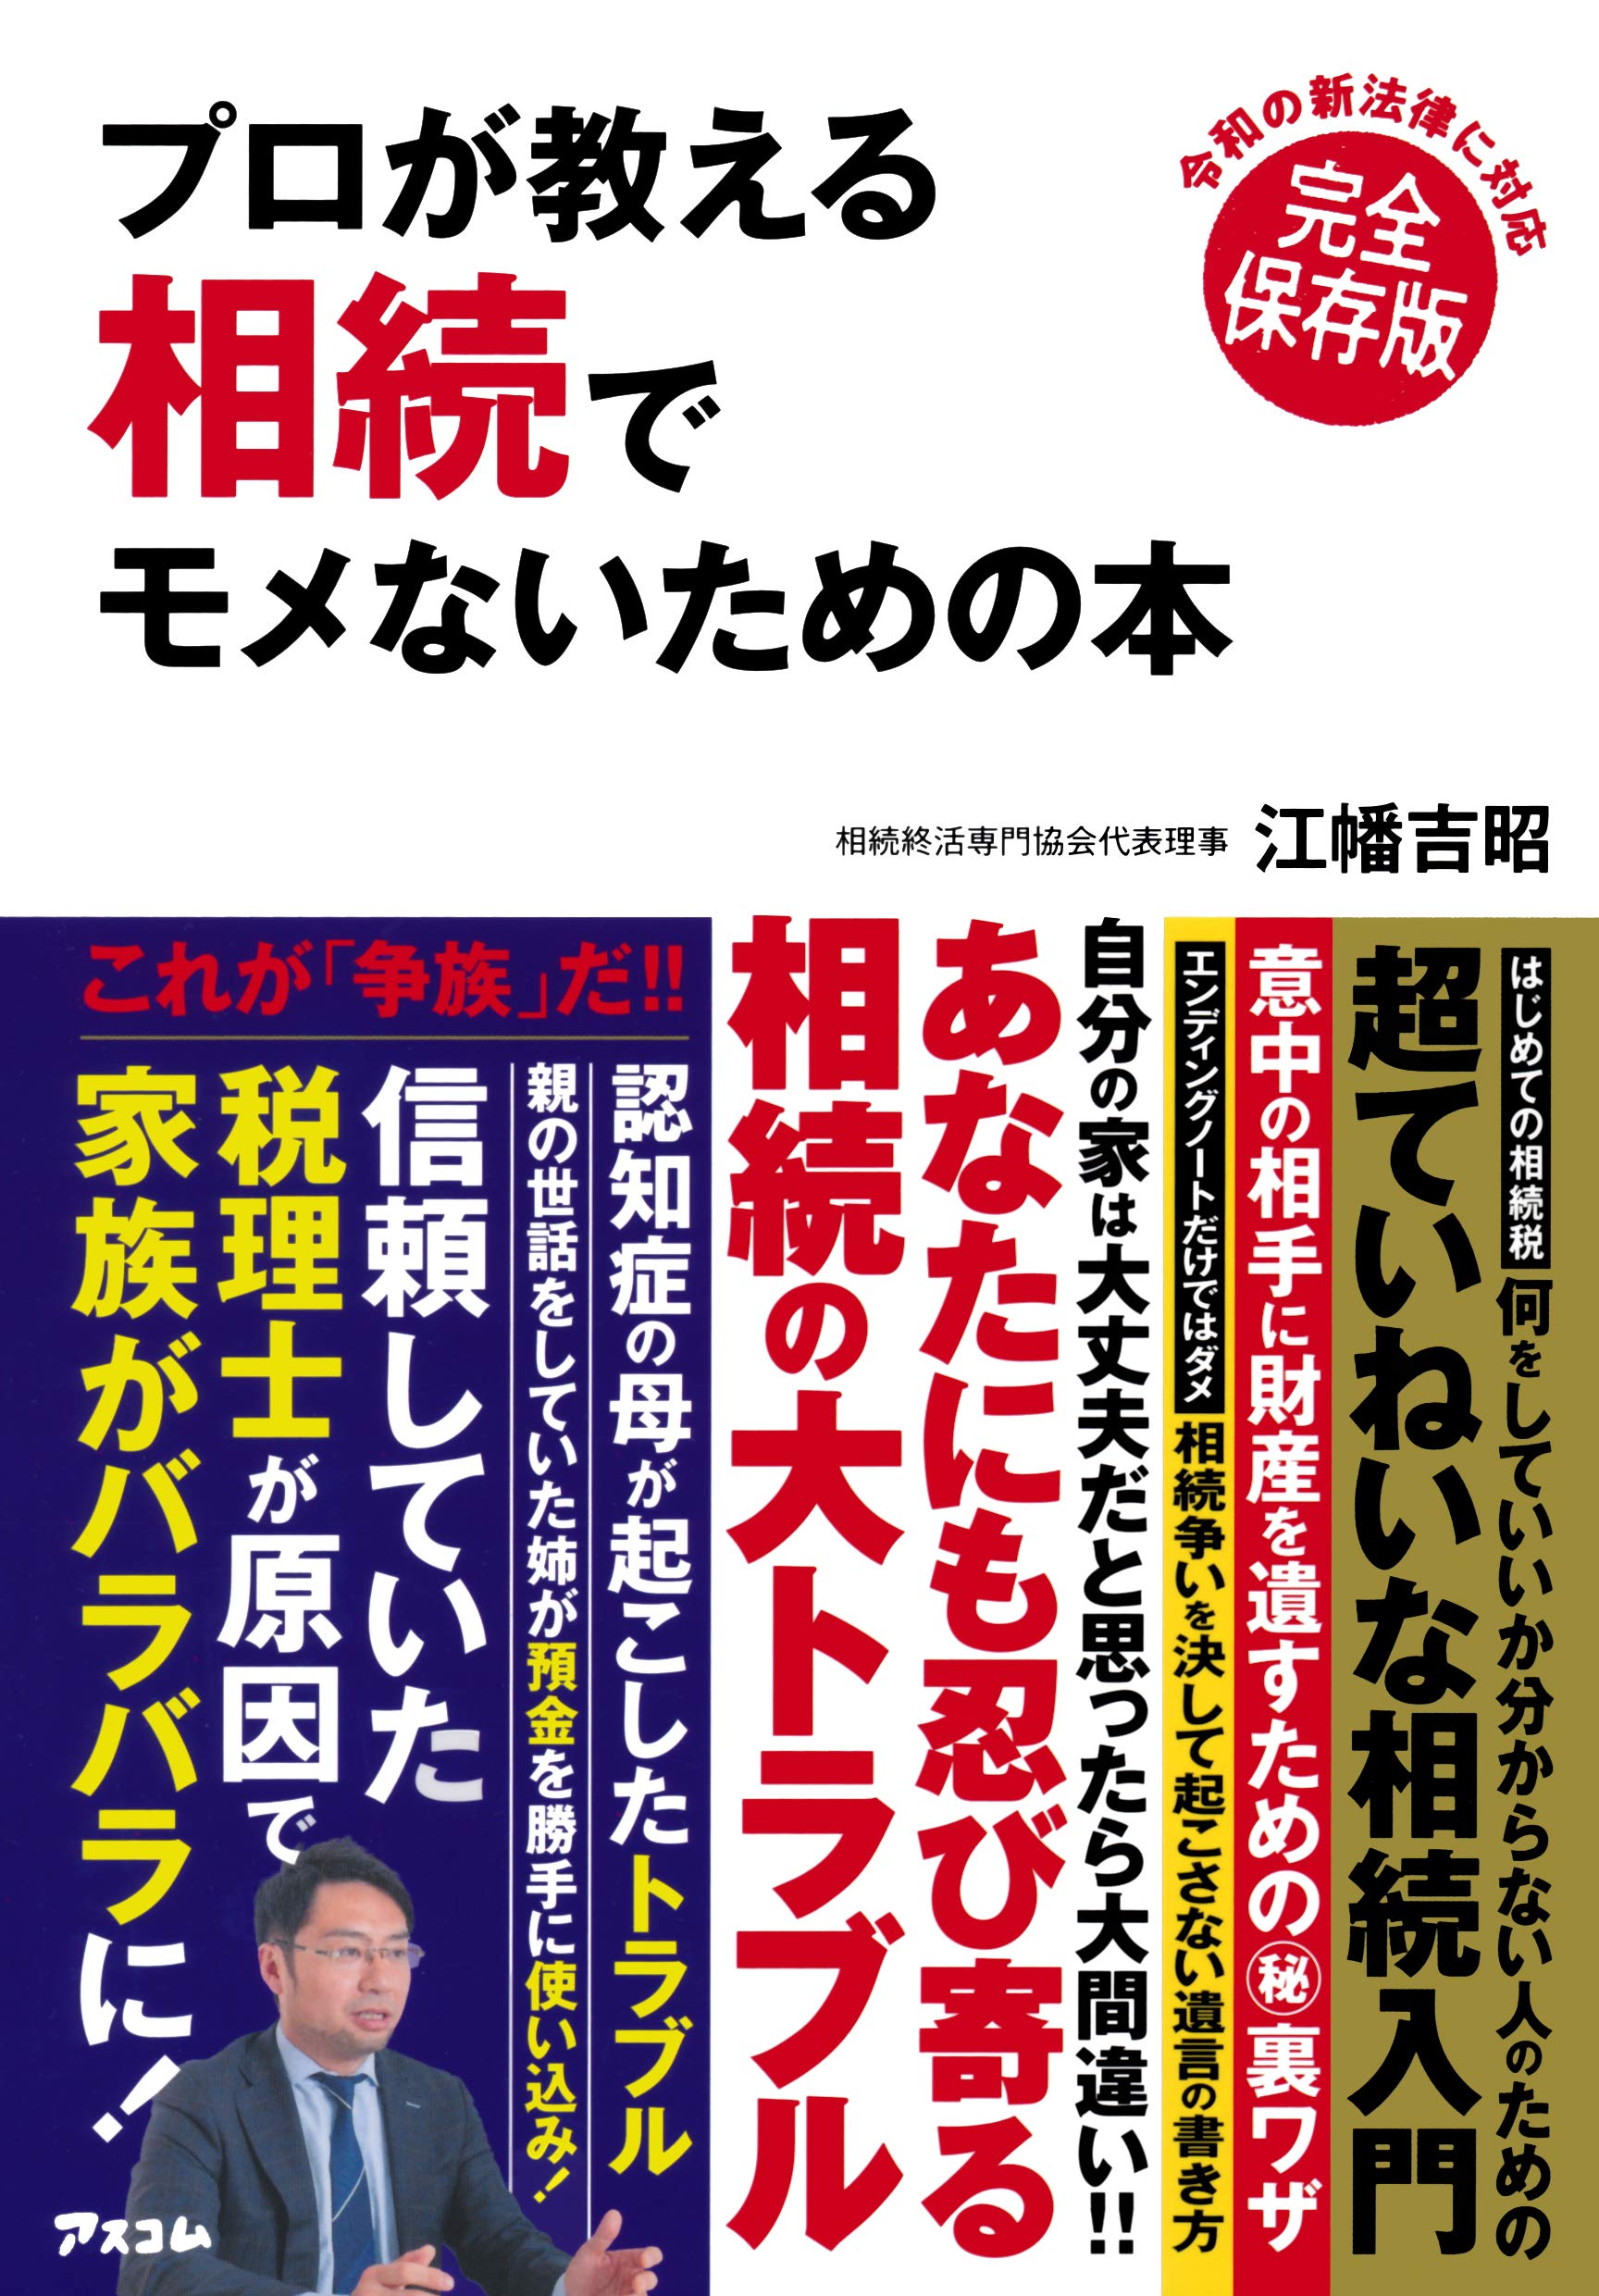 本日発売の週刊現代『相続と贈与の新しい手続き』の中で江幡のコメントが掲載されています